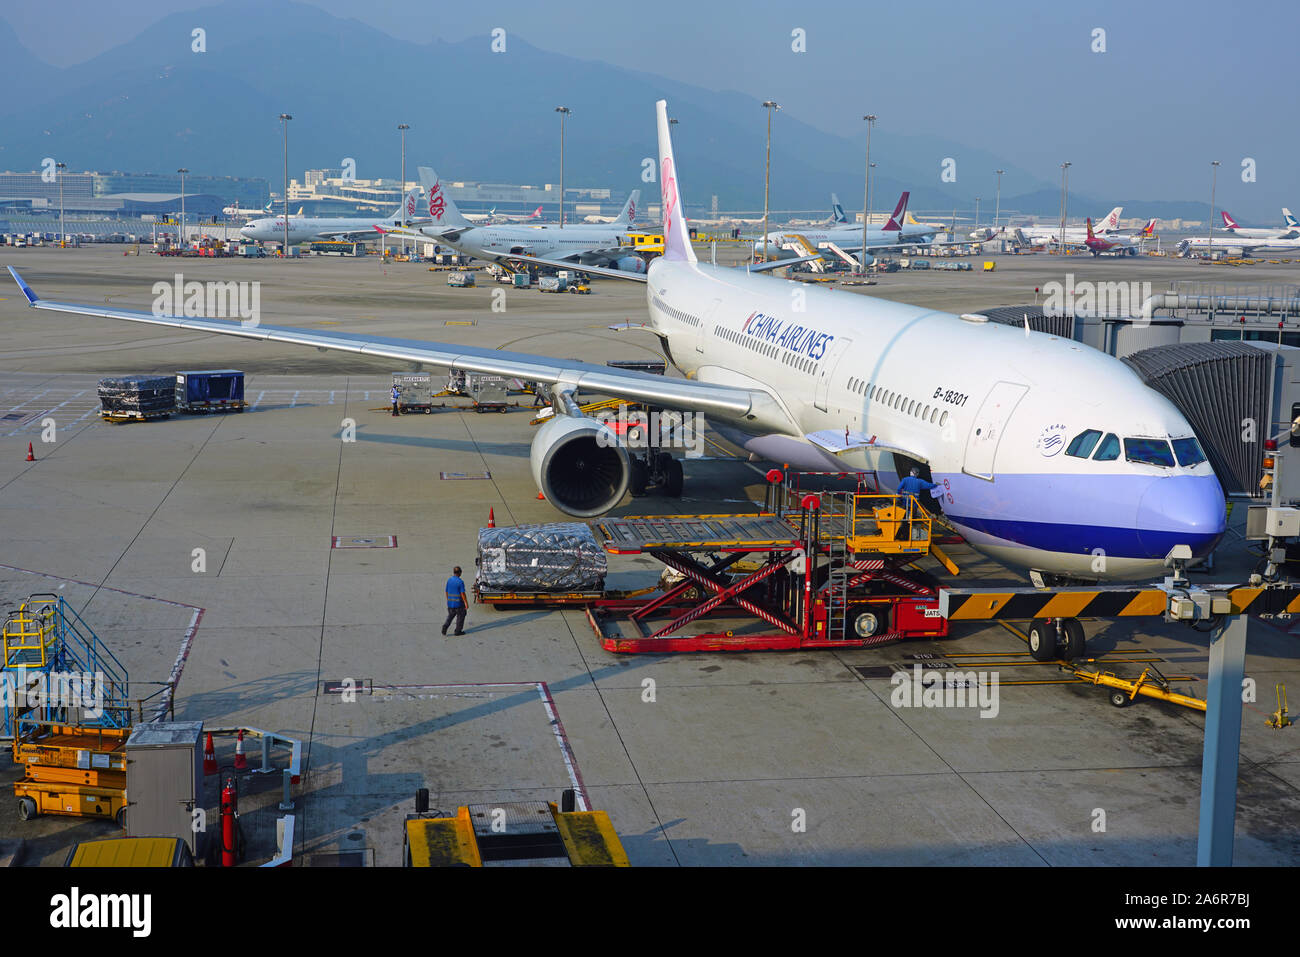 HONG KONG -18 oct 2019- Vue d'un avion de la compagnie aérienne de Taiwan China Airlines (CI) à l'occupé l'Aéroport International de Hong Kong (HKG), situé dans la région de Chek Banque D'Images